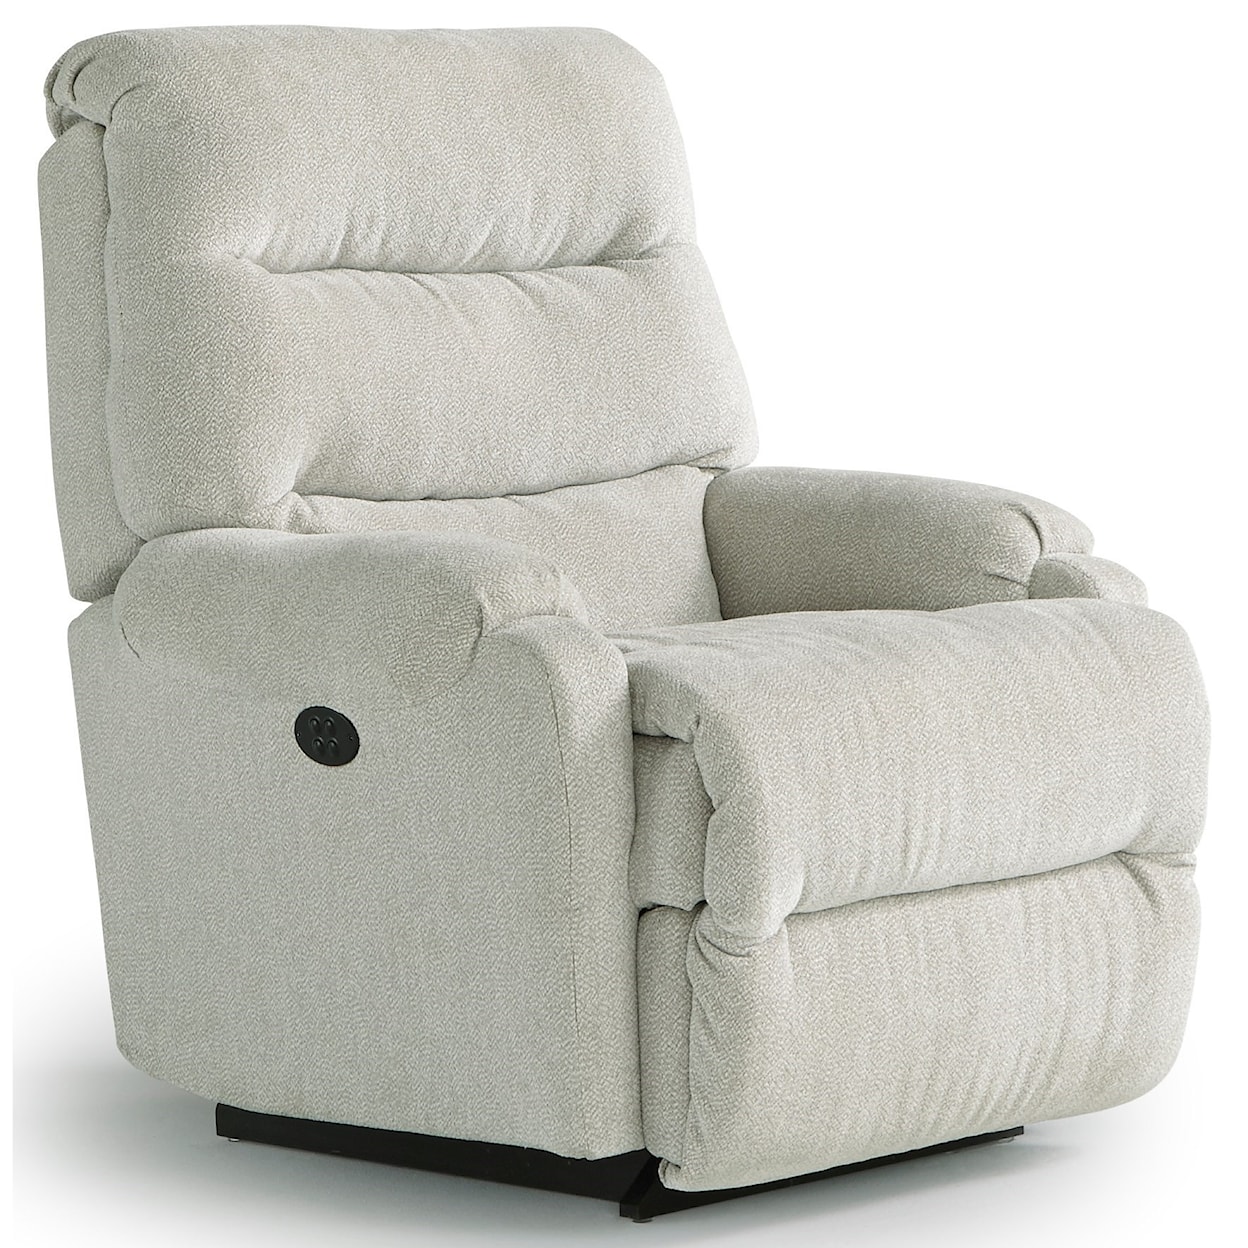 Bravo Furniture Sedgefield Sedgefield Pwr Rock Recliner w/ Pwr Headrest